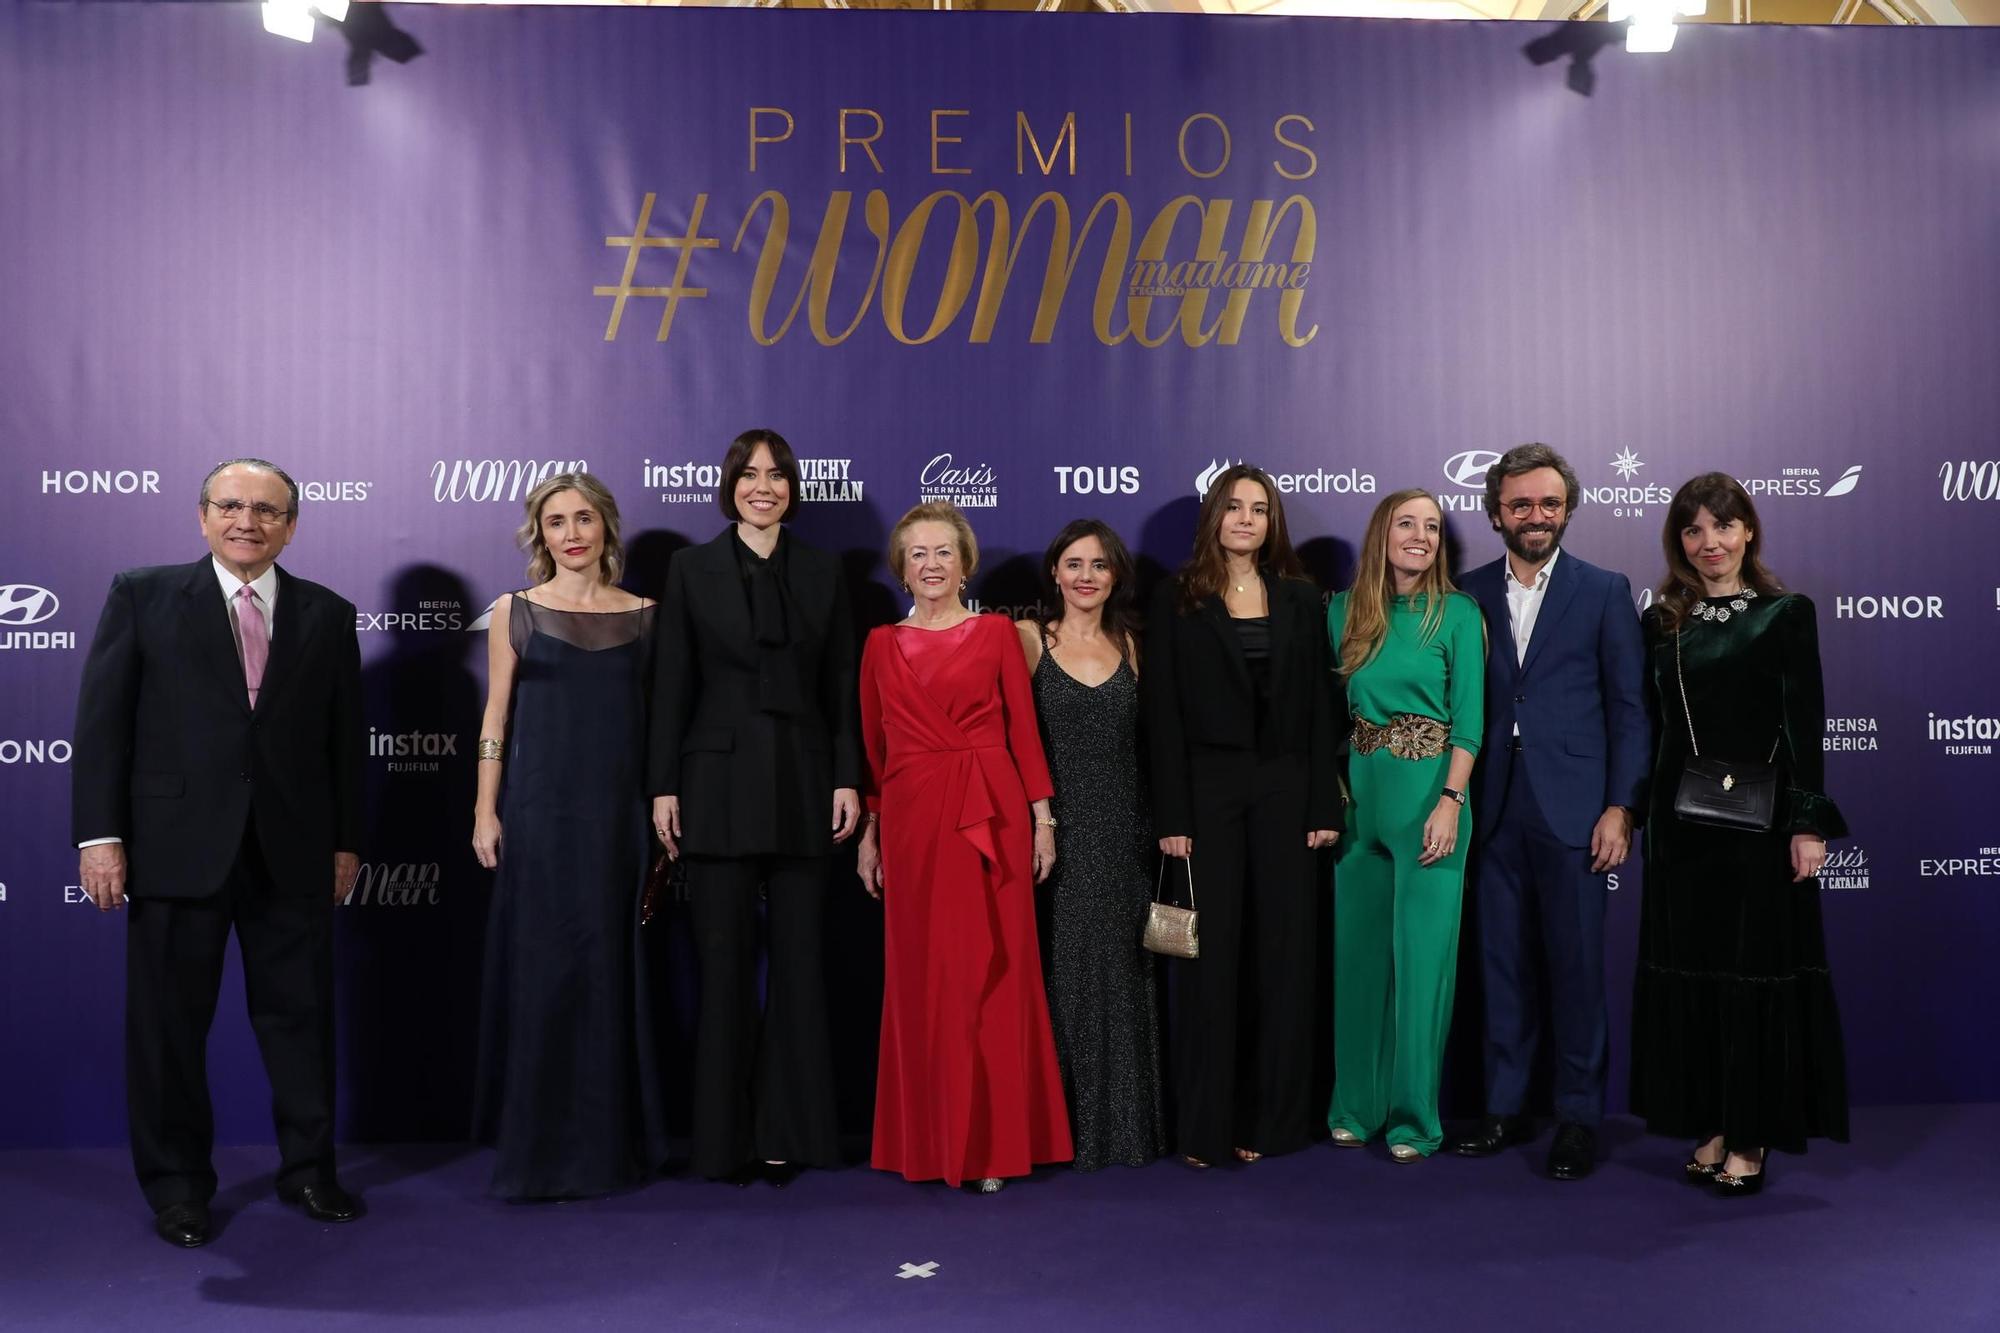 La séptima edición de los Premios Woman, en imágenes